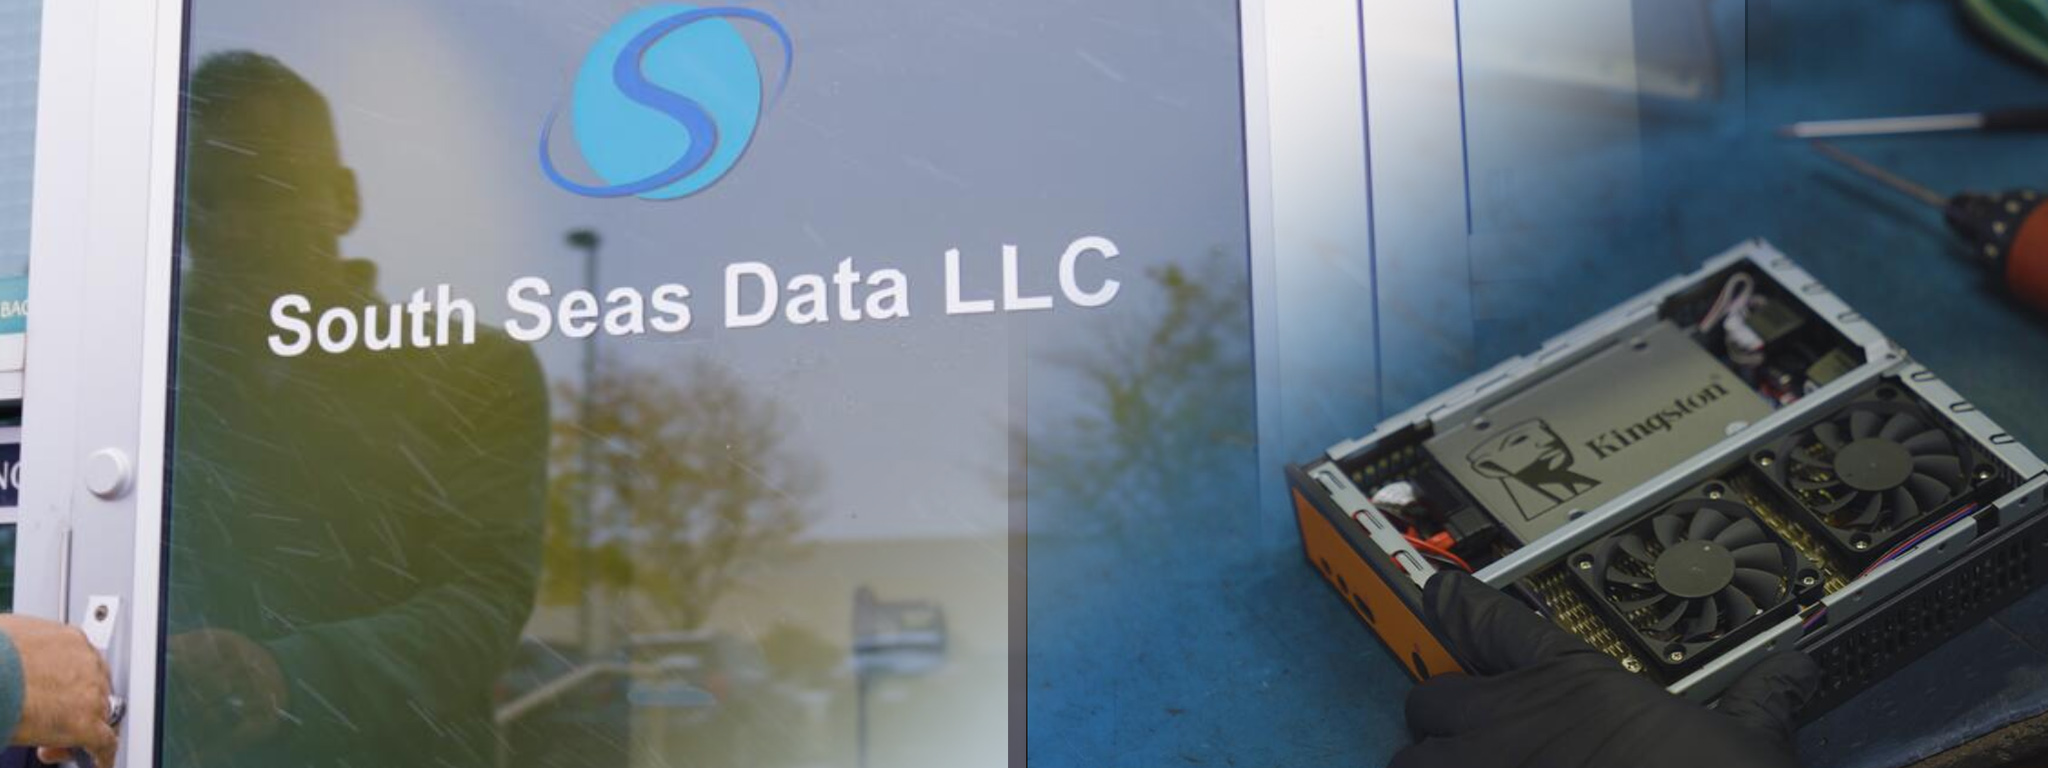 Die Eingangstür des Hauptsitzes von South Seas Data LLC und ein überlagertes Bild eines Systems, in dem eine Kingston SSD zum Einsatz kommt.